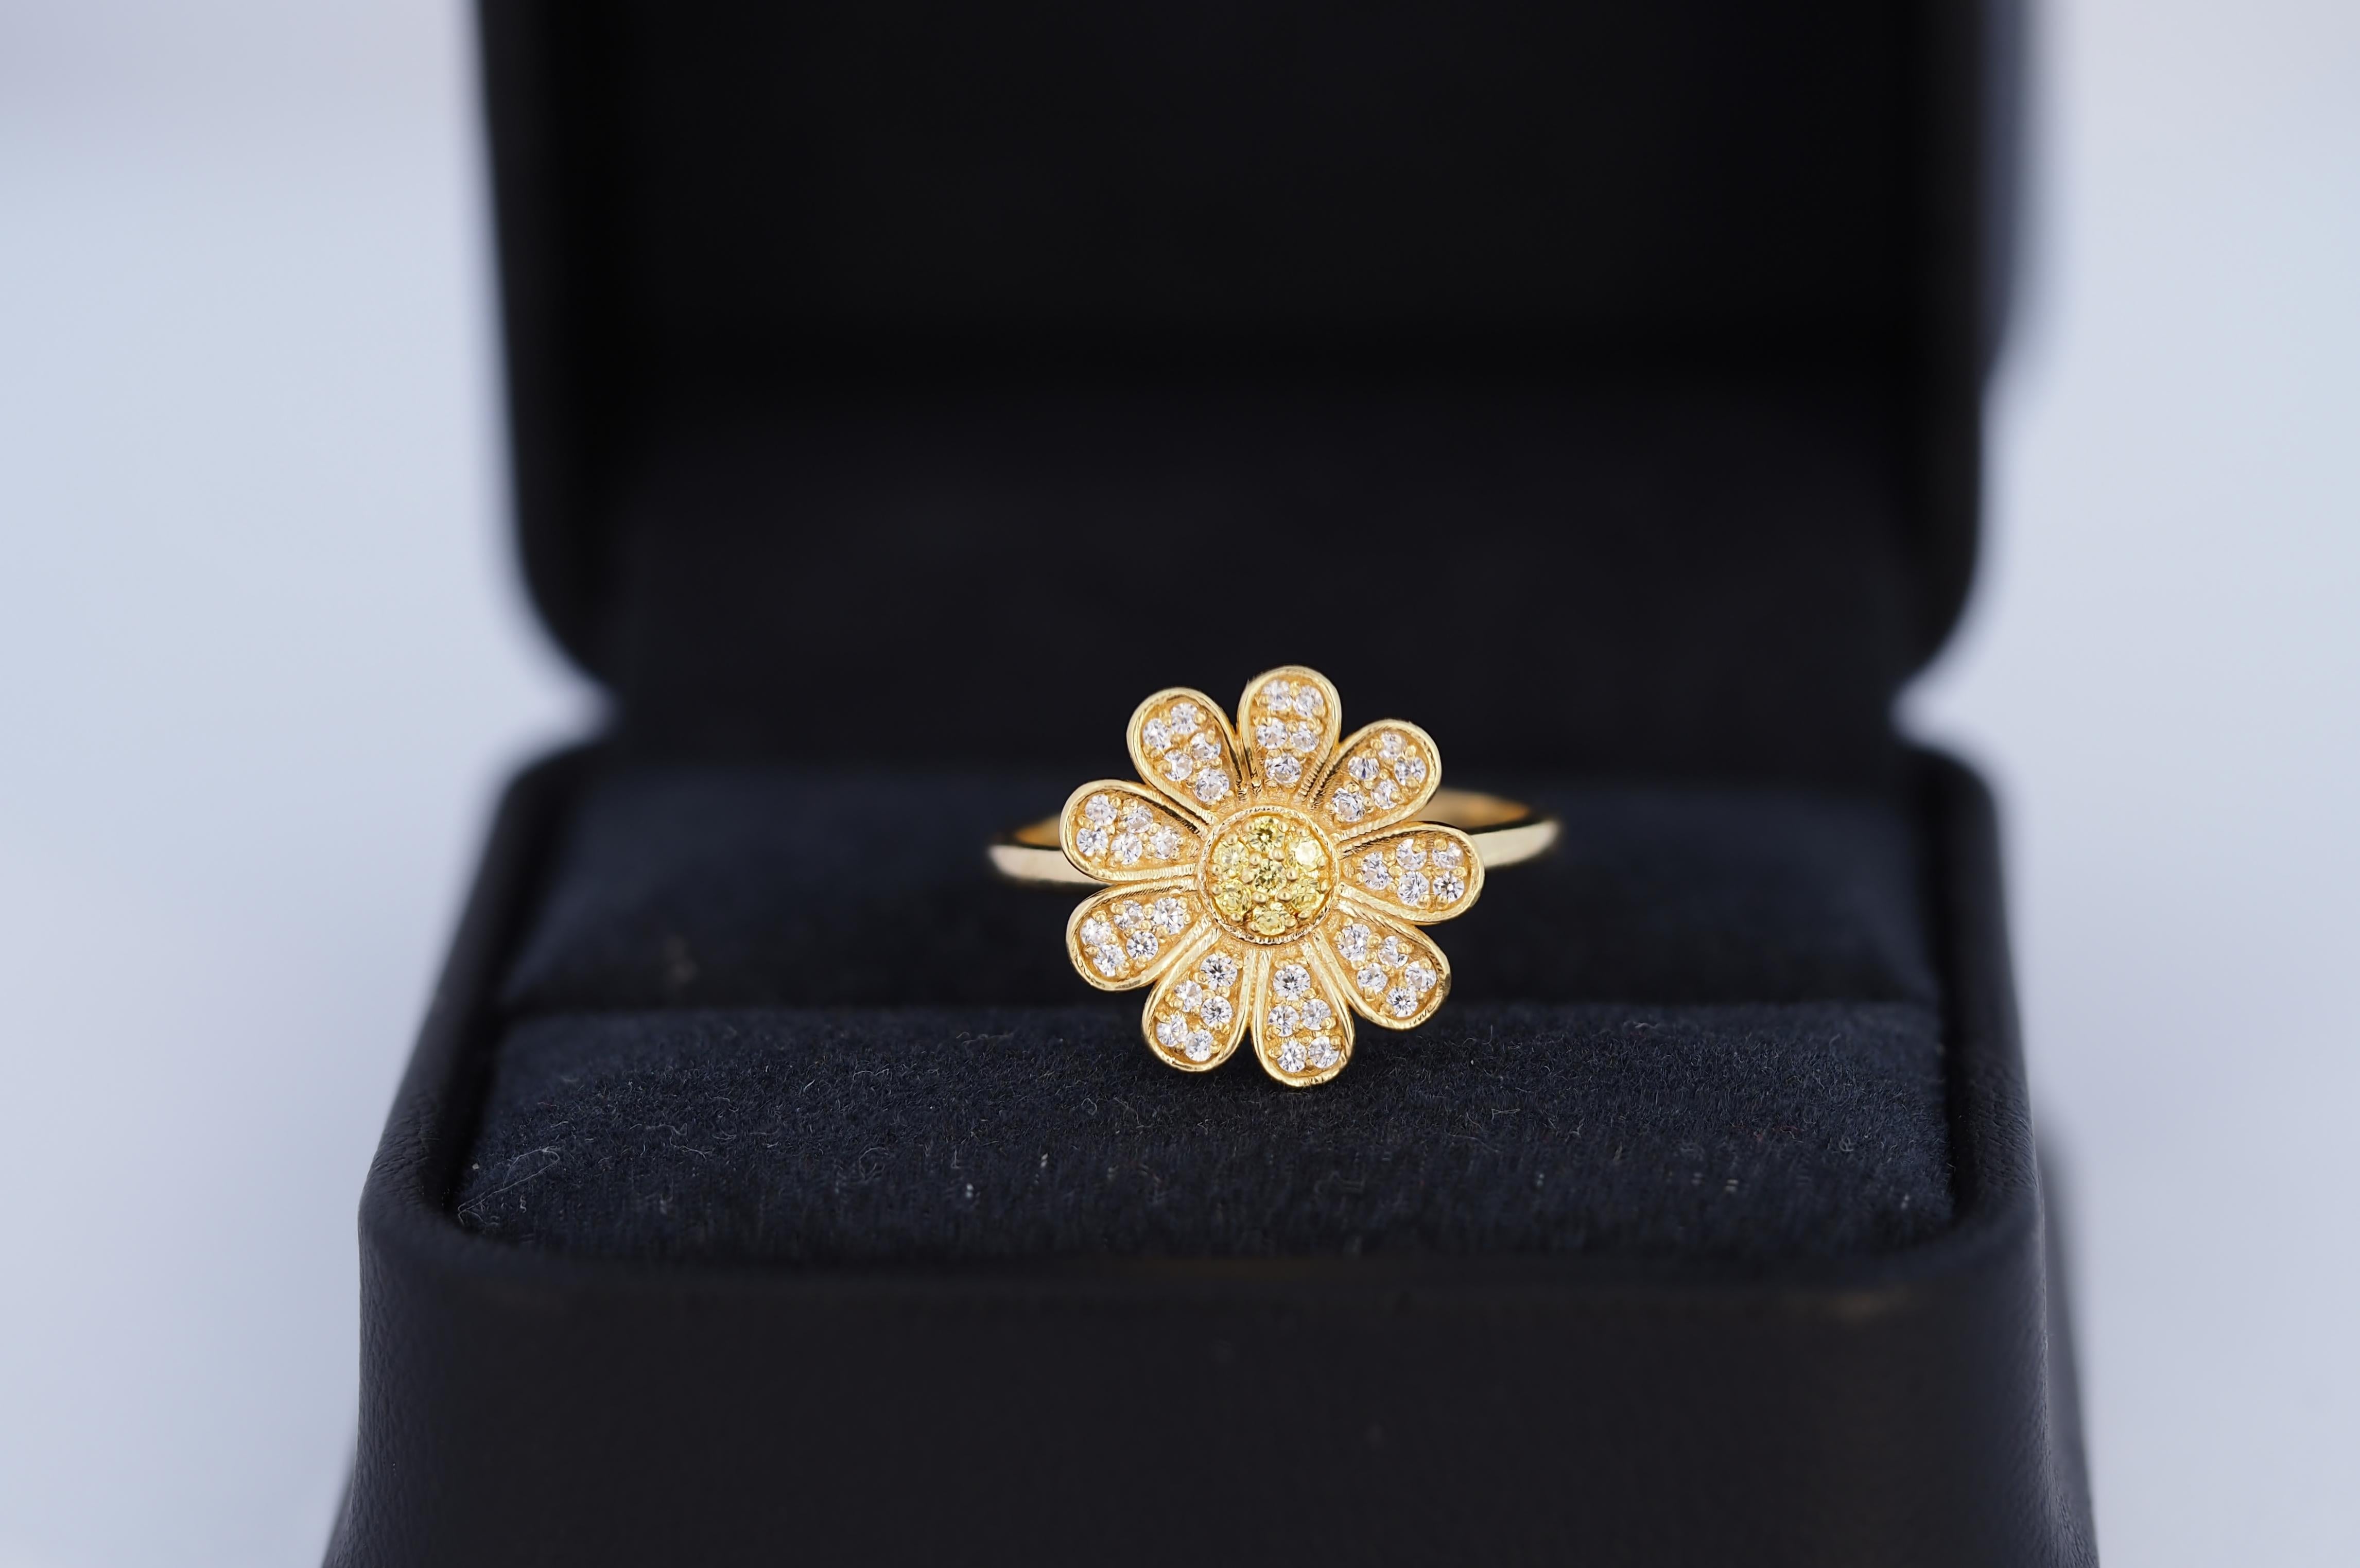 For Sale:  Daisy flower 14k gold ring.  10